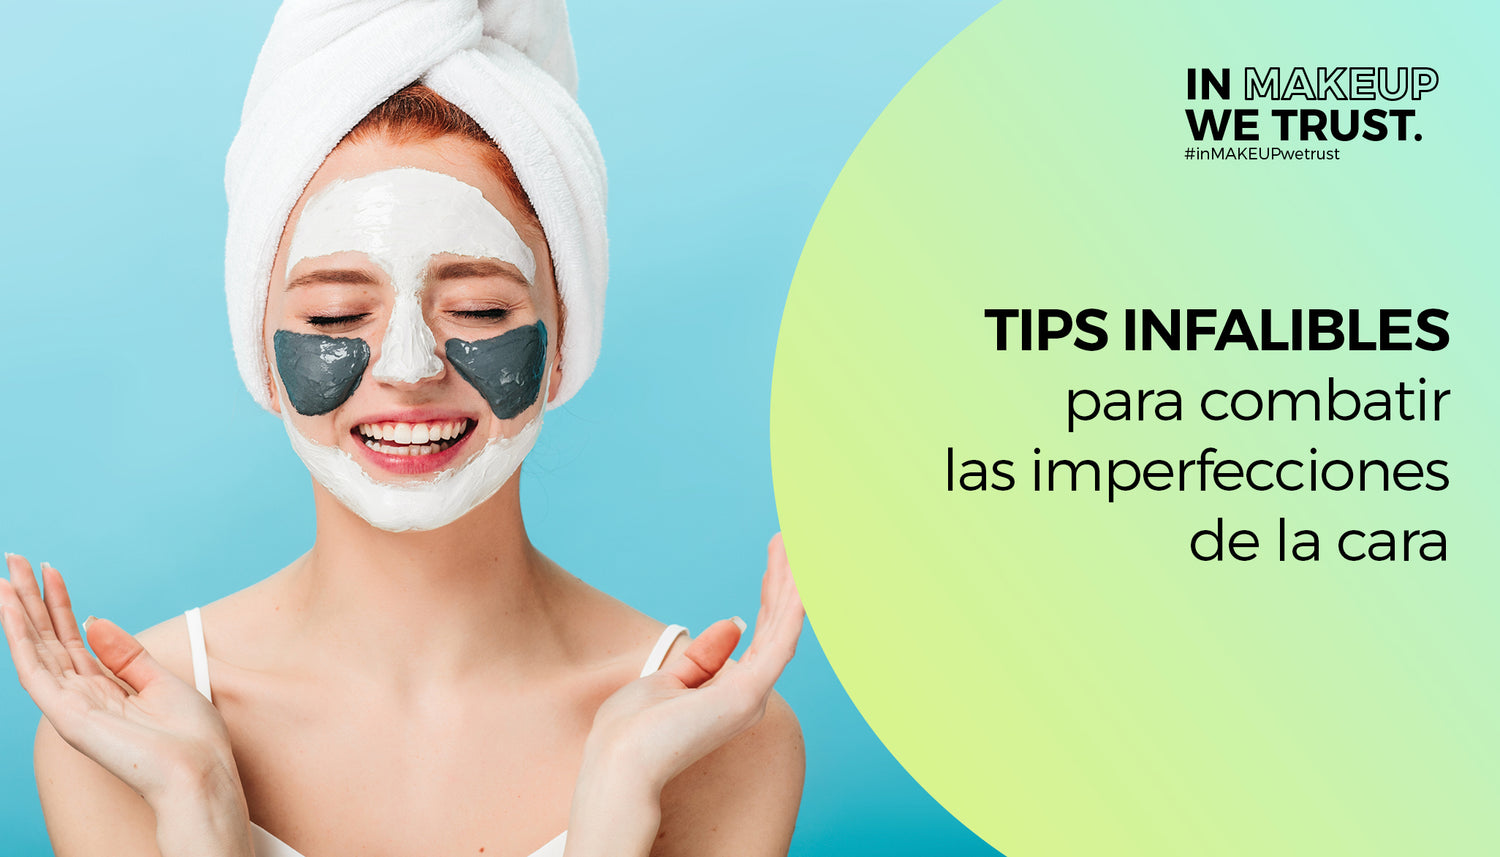 Tips infalibles para combatir las imperfecciones de la cara